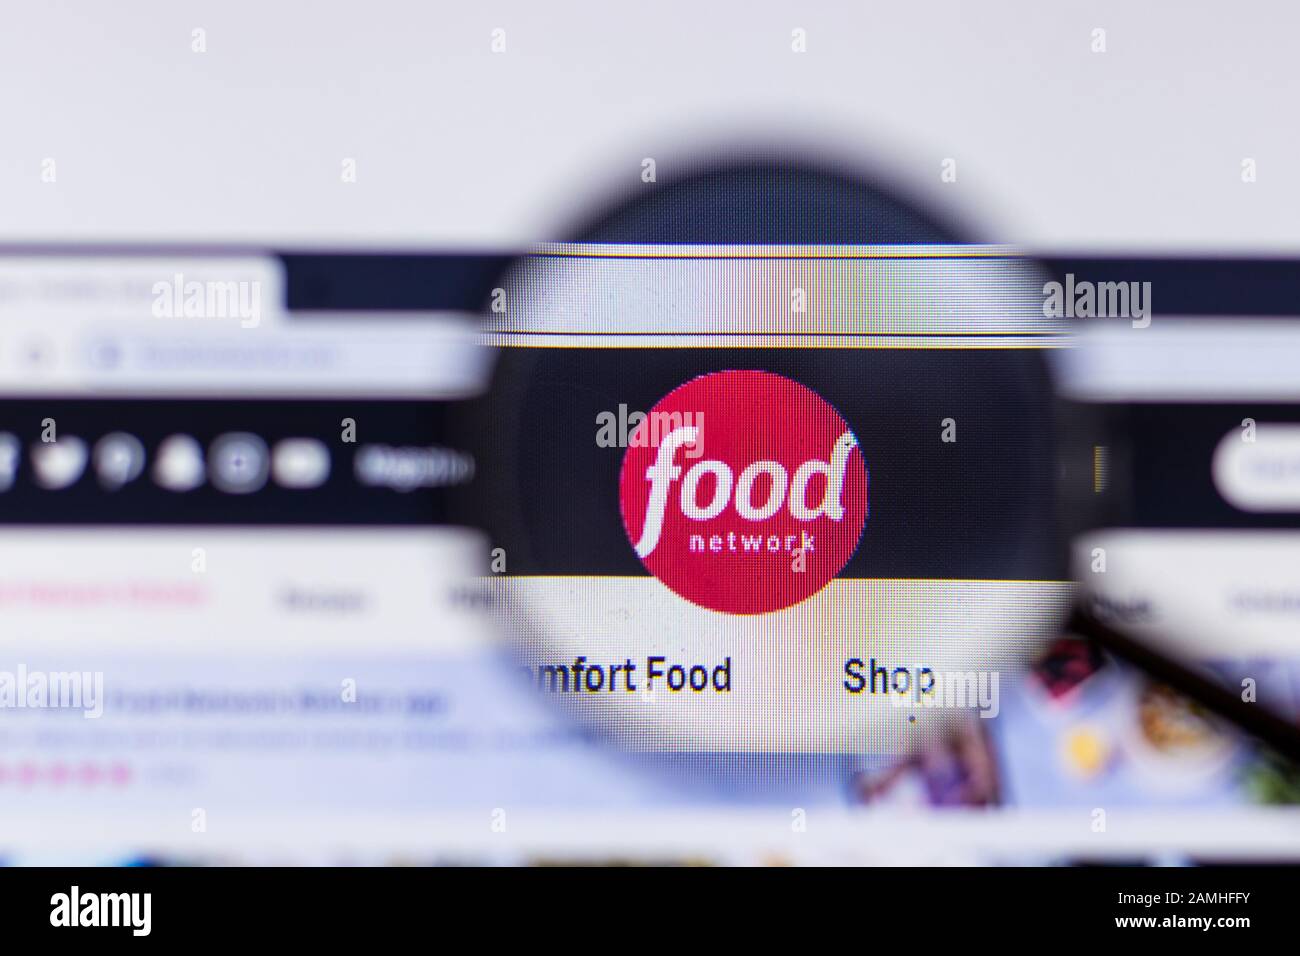 Saint-Pétersbourg, Russie - 10 janvier 2020: Page du site Internet du réseau alimentaire sur un écran d'ordinateur portable avec logo, éditorial illustratif Banque D'Images